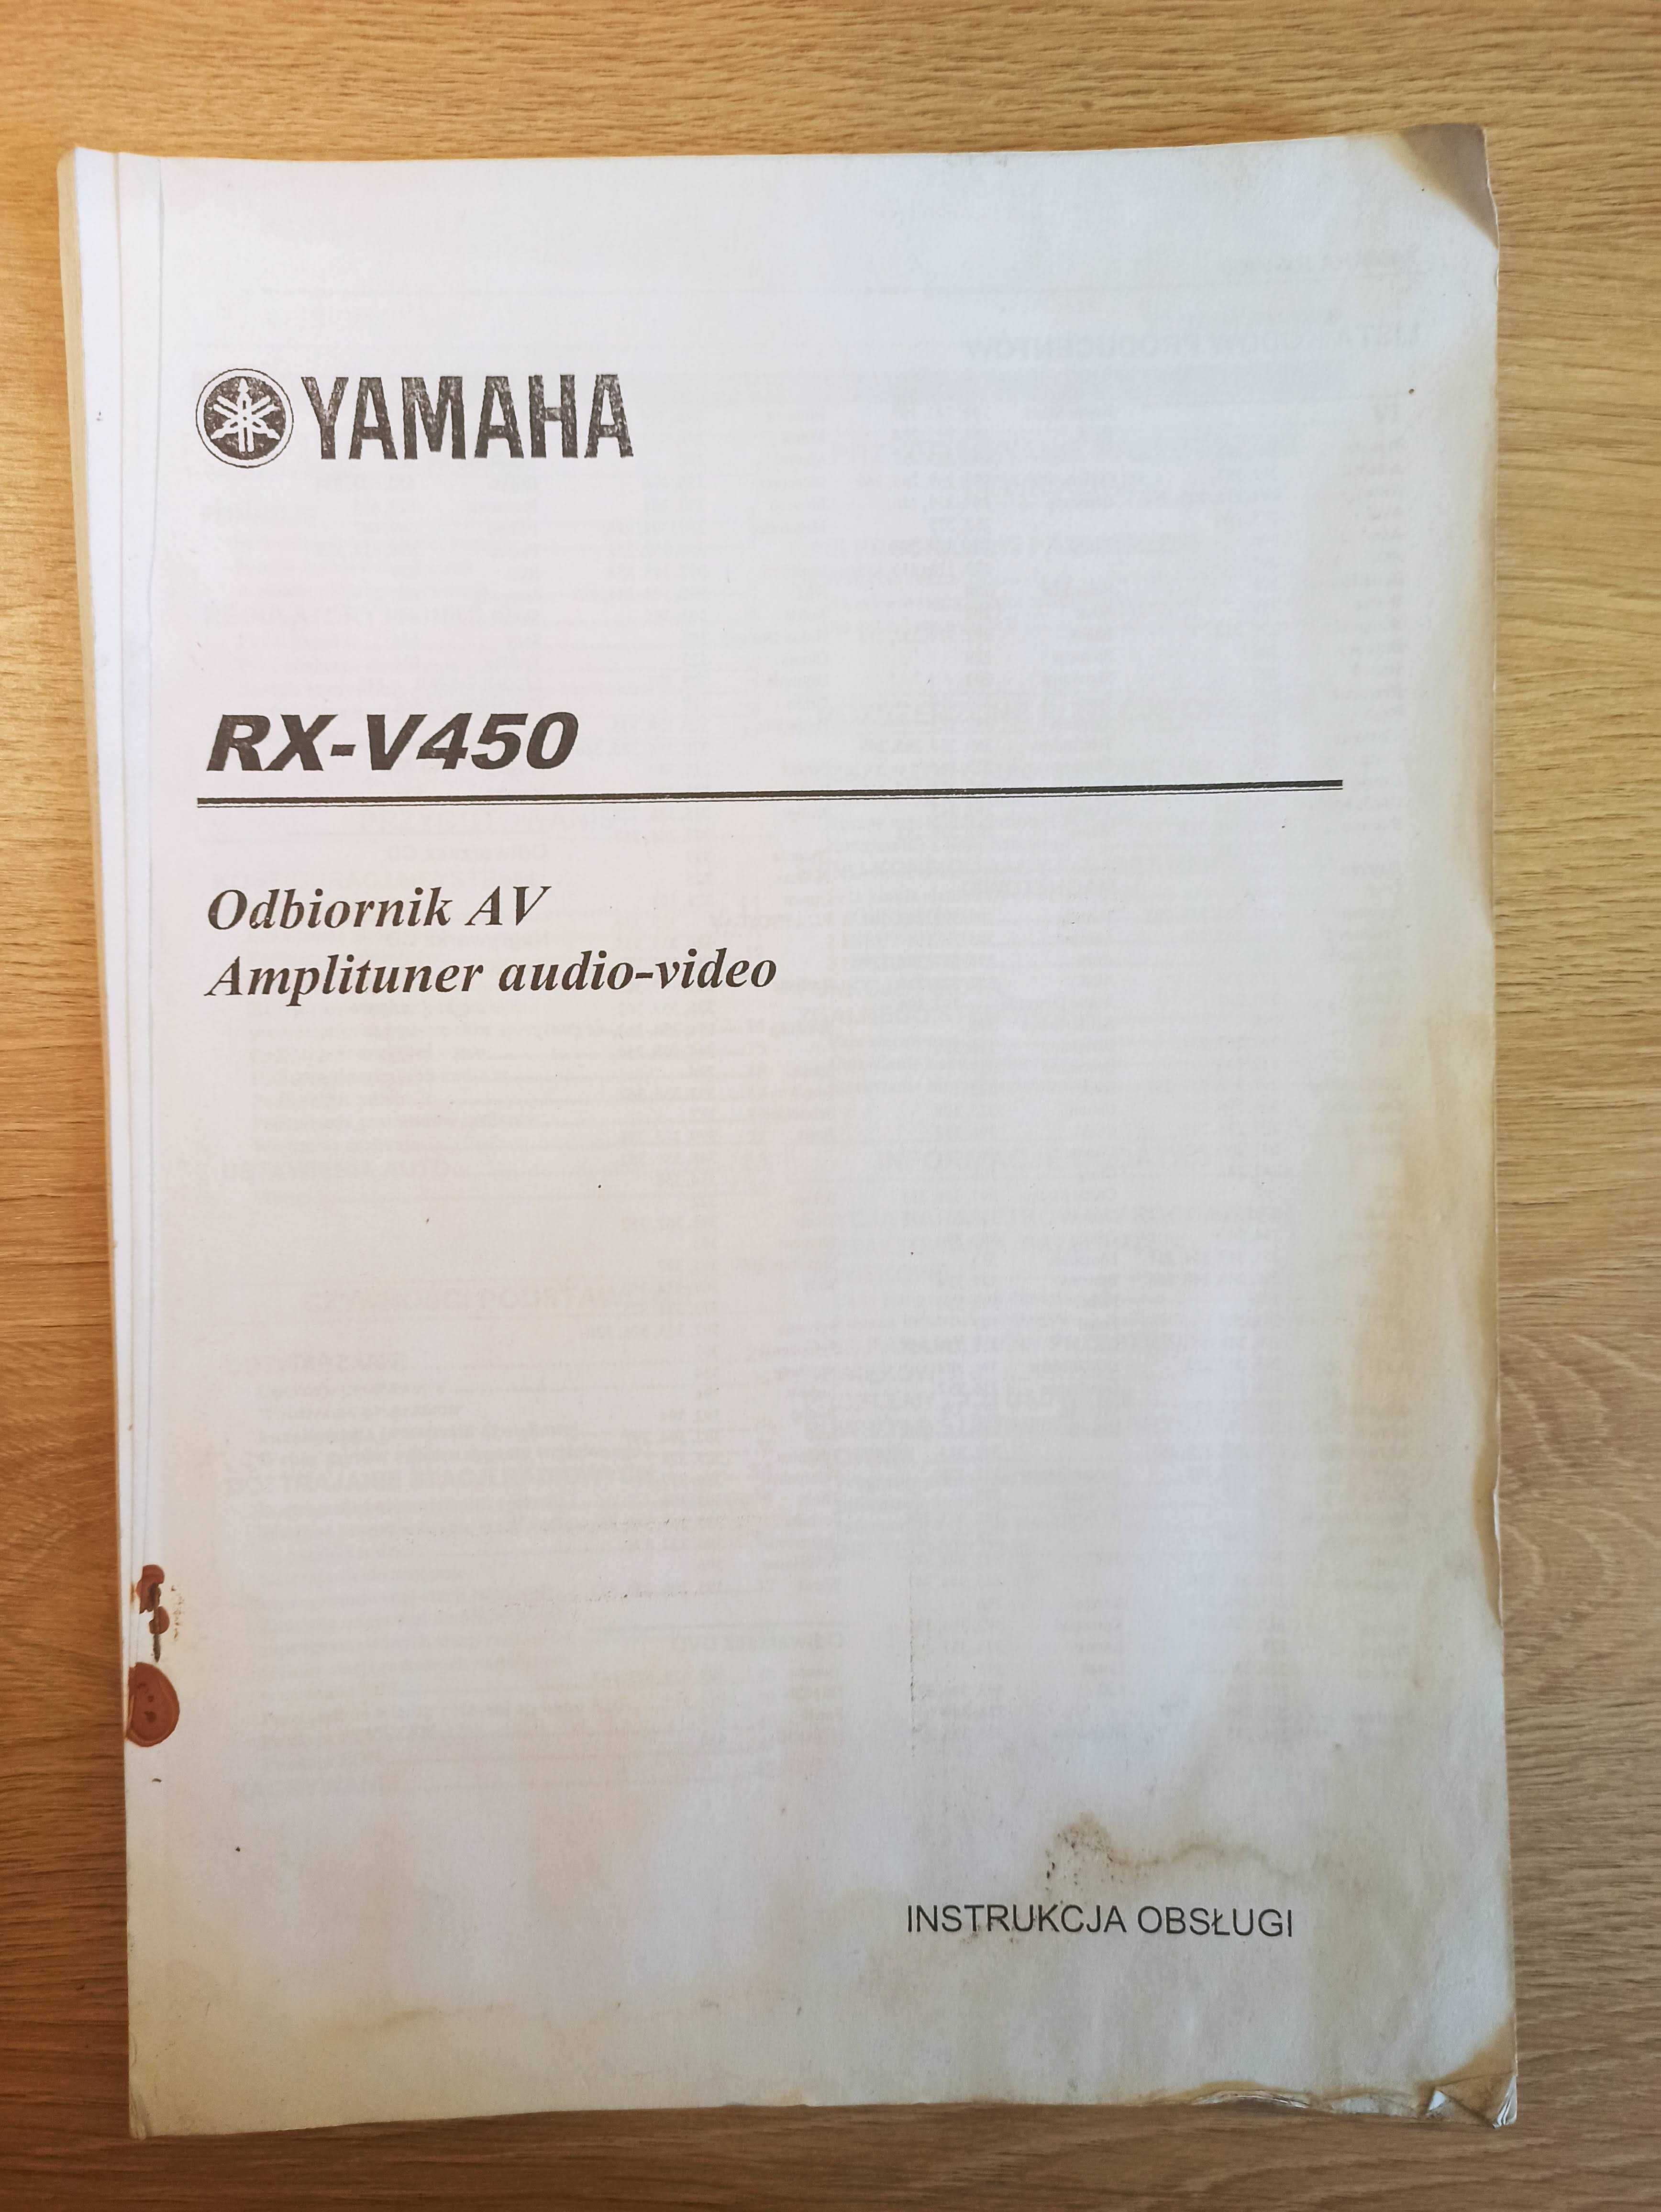 Instrukcja obsługi YAMAHA RX-V350 LUB RX-V450 w języku polskim